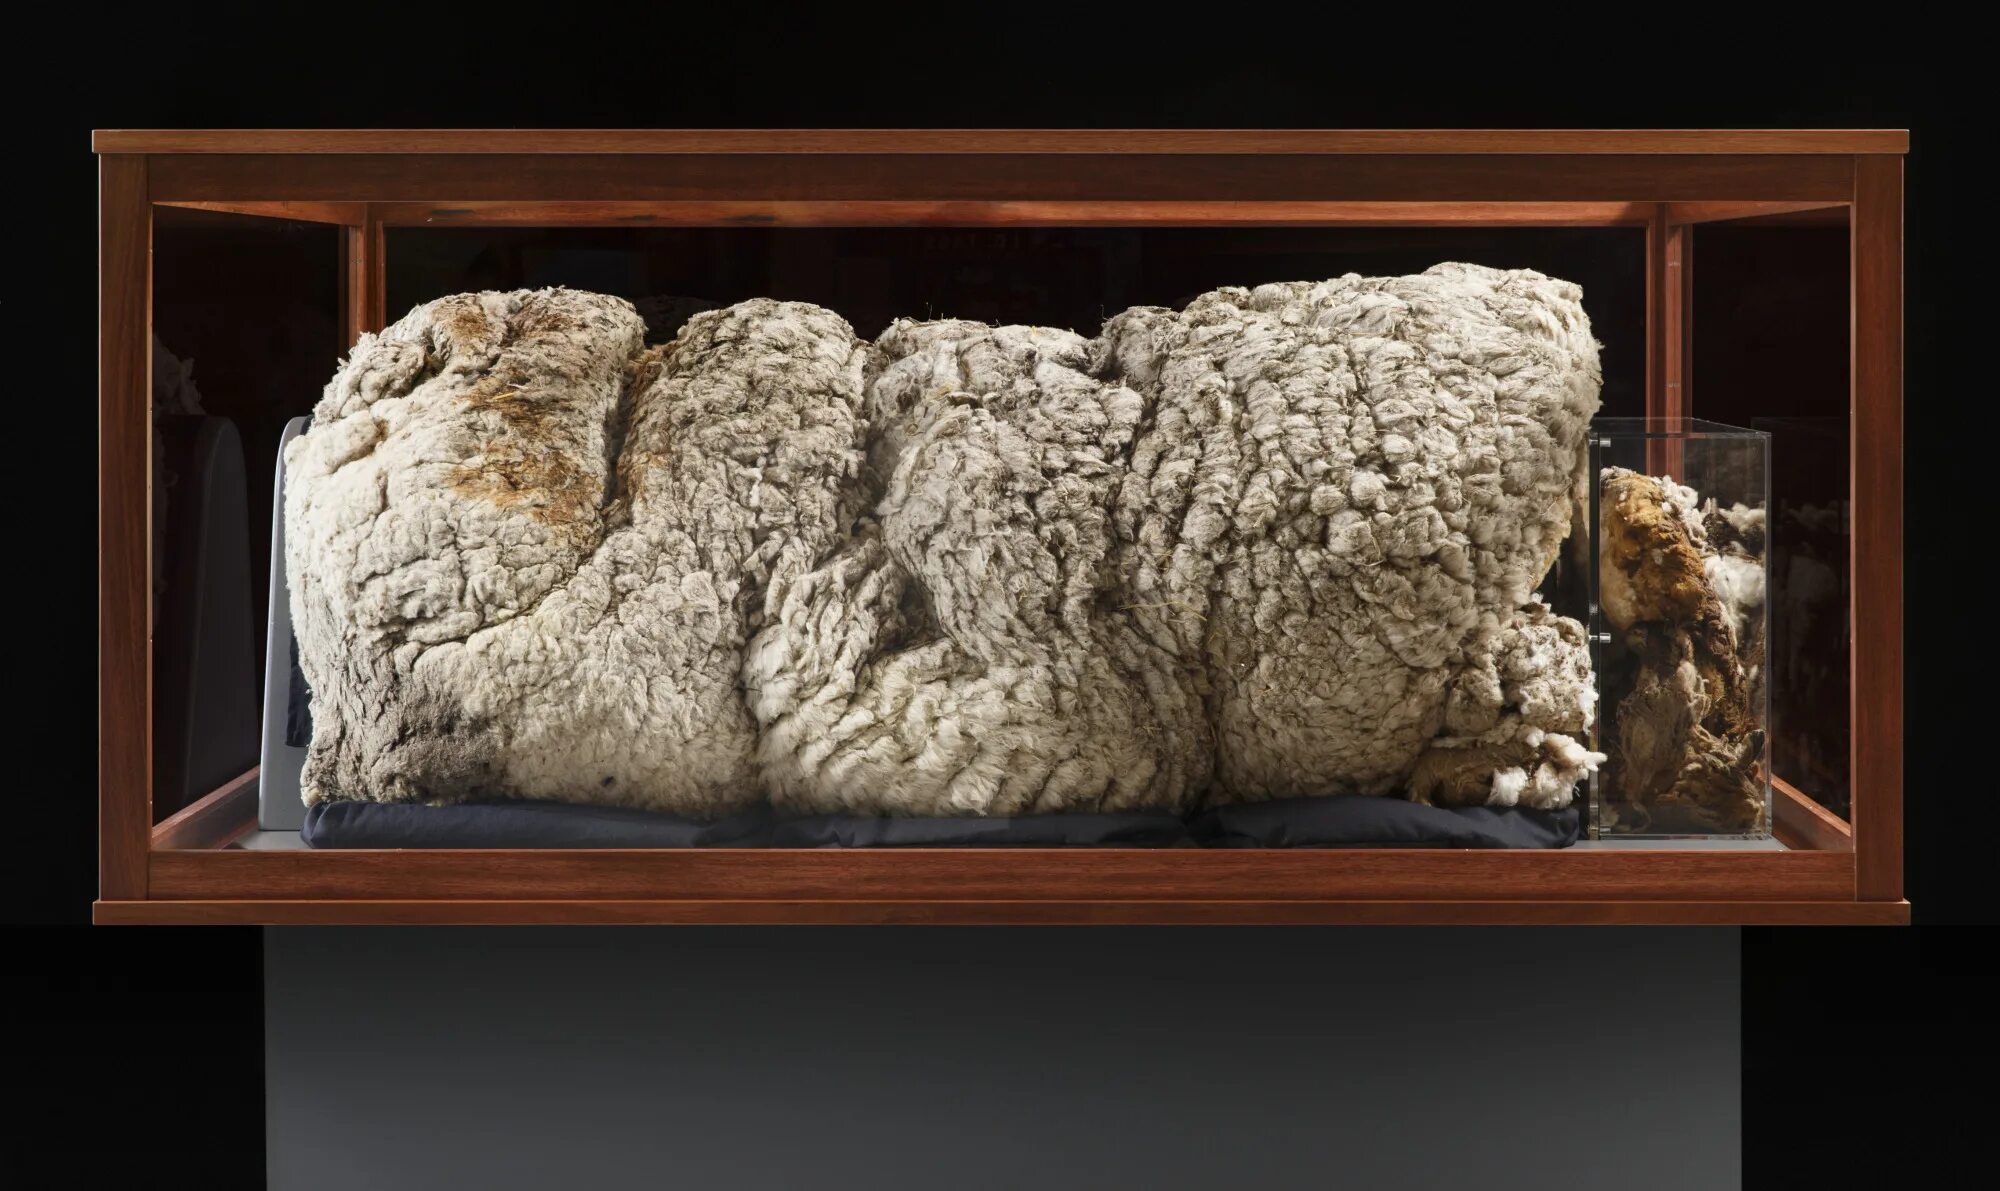 Овца шерсть 35 кг. Руно овечьей шерсти. Руно шерсть овцы. Музей шерсти.